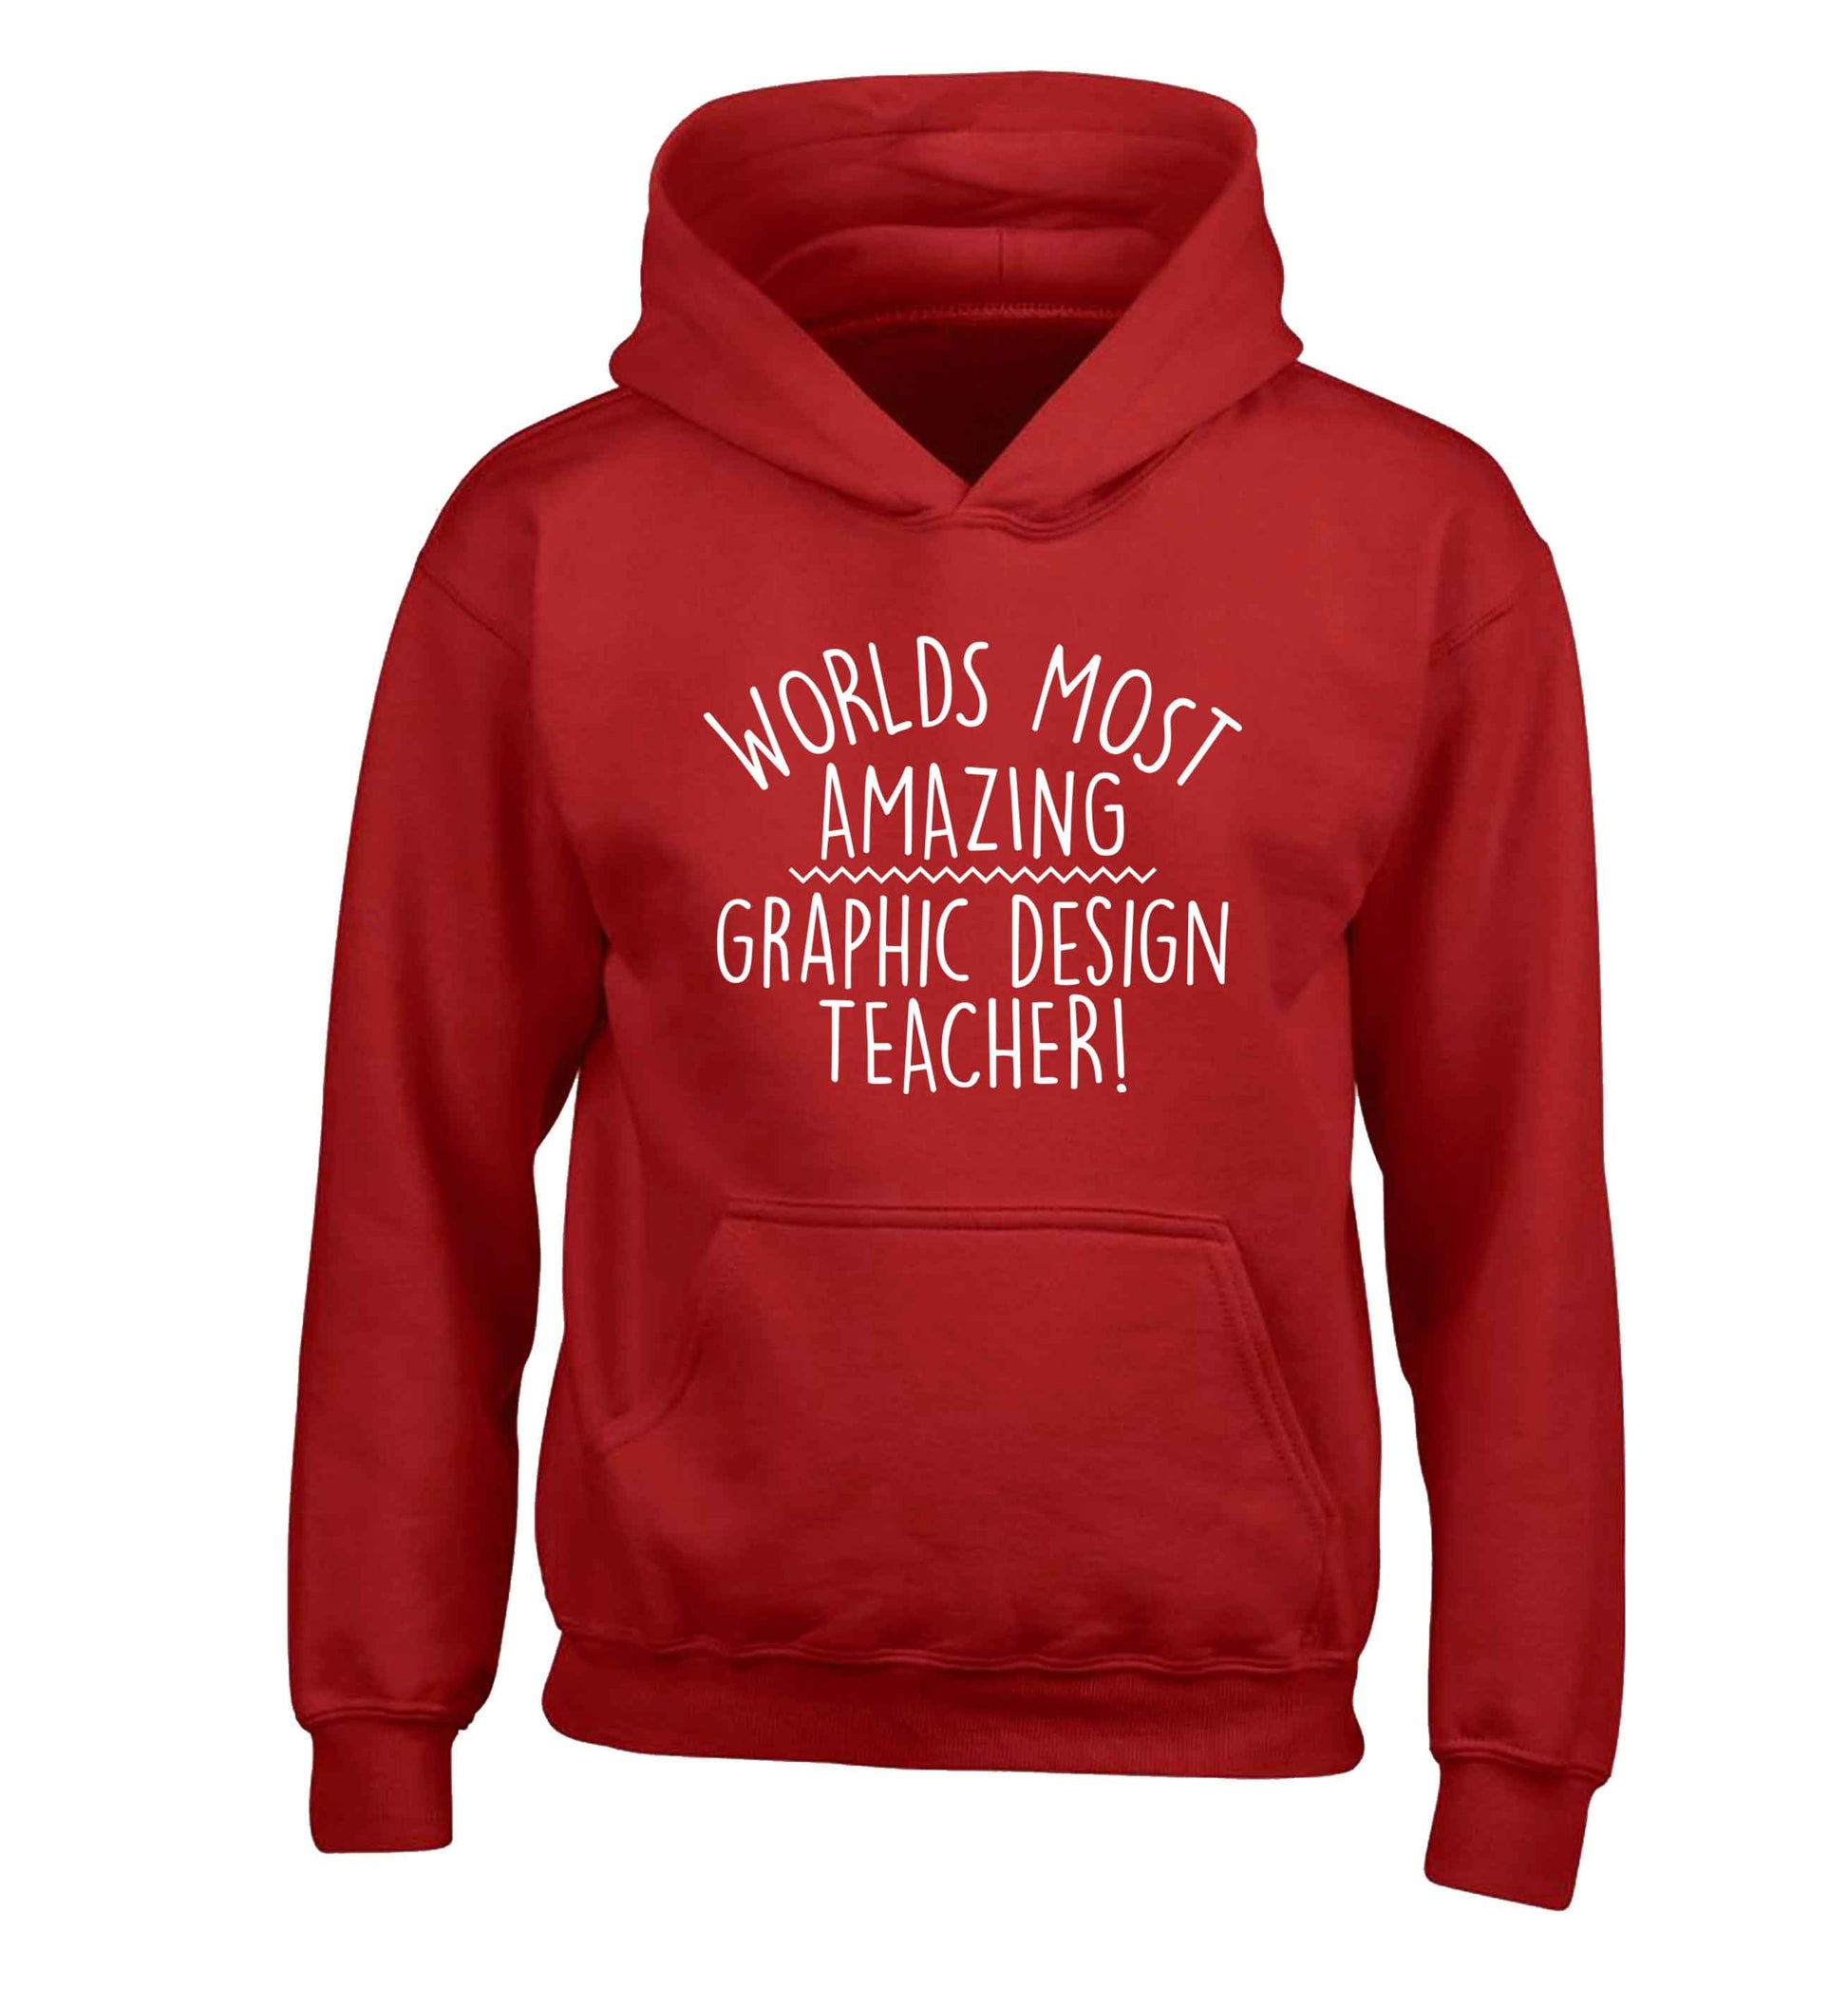 Worlds most amazing graphic design teacher children's red hoodie 12-13 Years